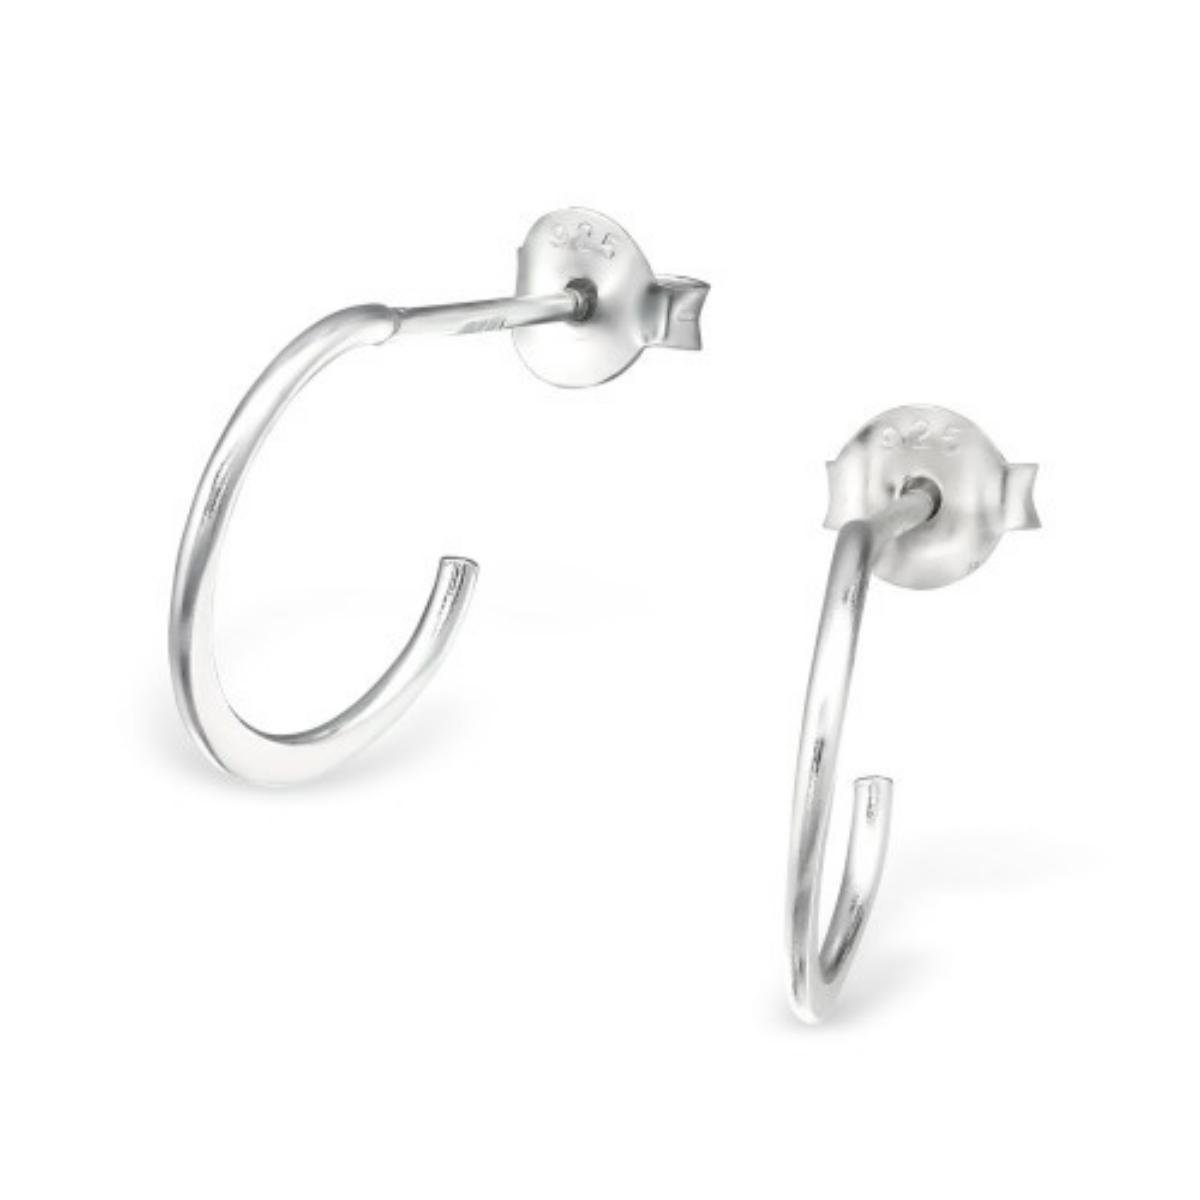 Hoepel oorbellen-zilveren oorbellen-getextureerde Cirkel oorbellen-grote hoepel oorbellen zilver Sieraden Oorbellen Hoepeloorbellen 